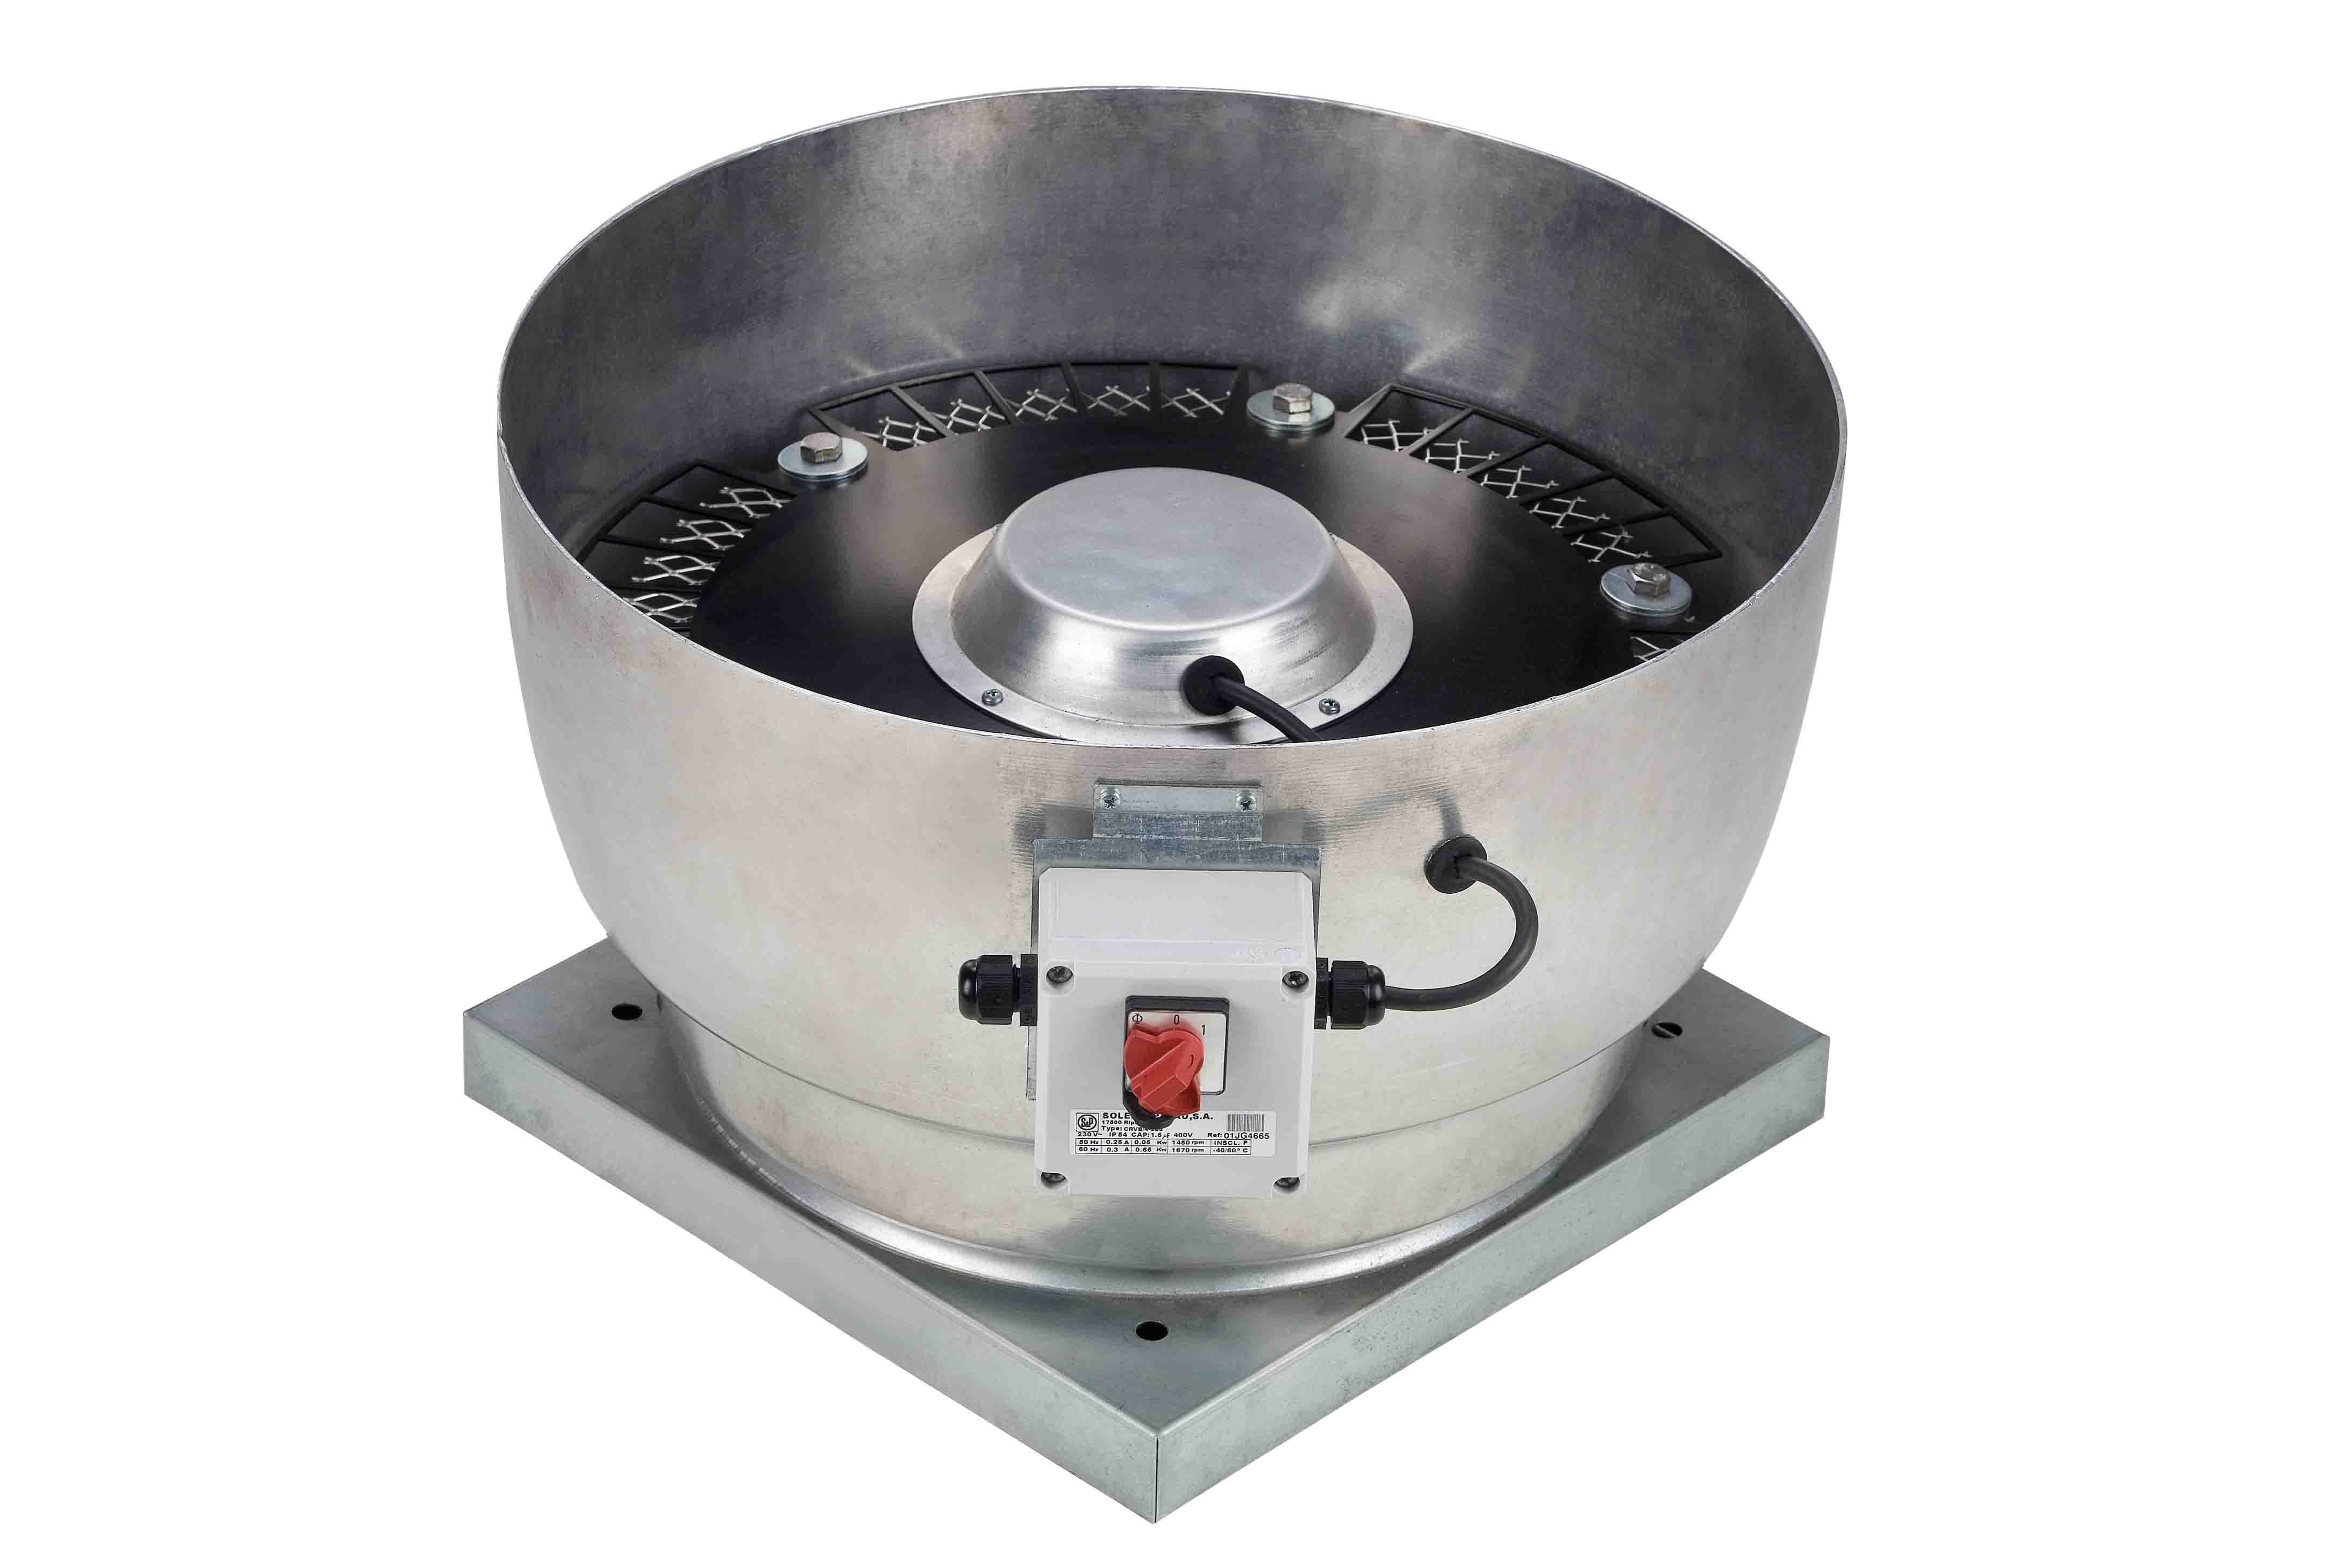 S&P - Tourelle centrifuge verticale monophasée, 230V, 4 pôles diamètre 315 mm